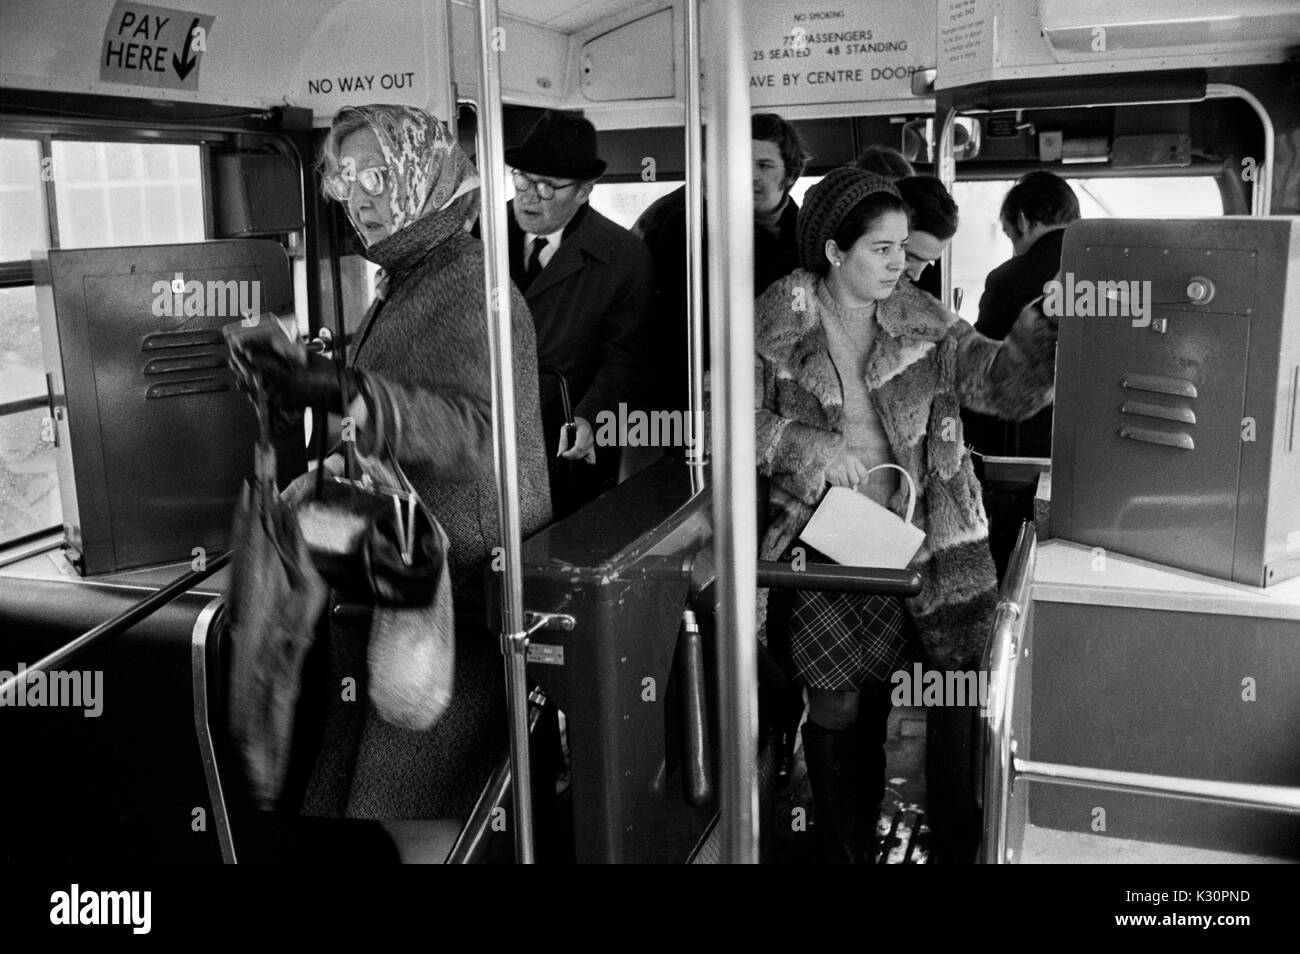 Macchina per i biglietti degli autobus 1970s di Londra all'interno dell'autobus. Pendolari e acquirenti che salgono su un autobus della London Transport. I conduttori degli autobus che distribuiscono i biglietti sono stati fermati e le biglietterie ora prendono il loro posto. 1970S UK HOMER SYKES Foto Stock